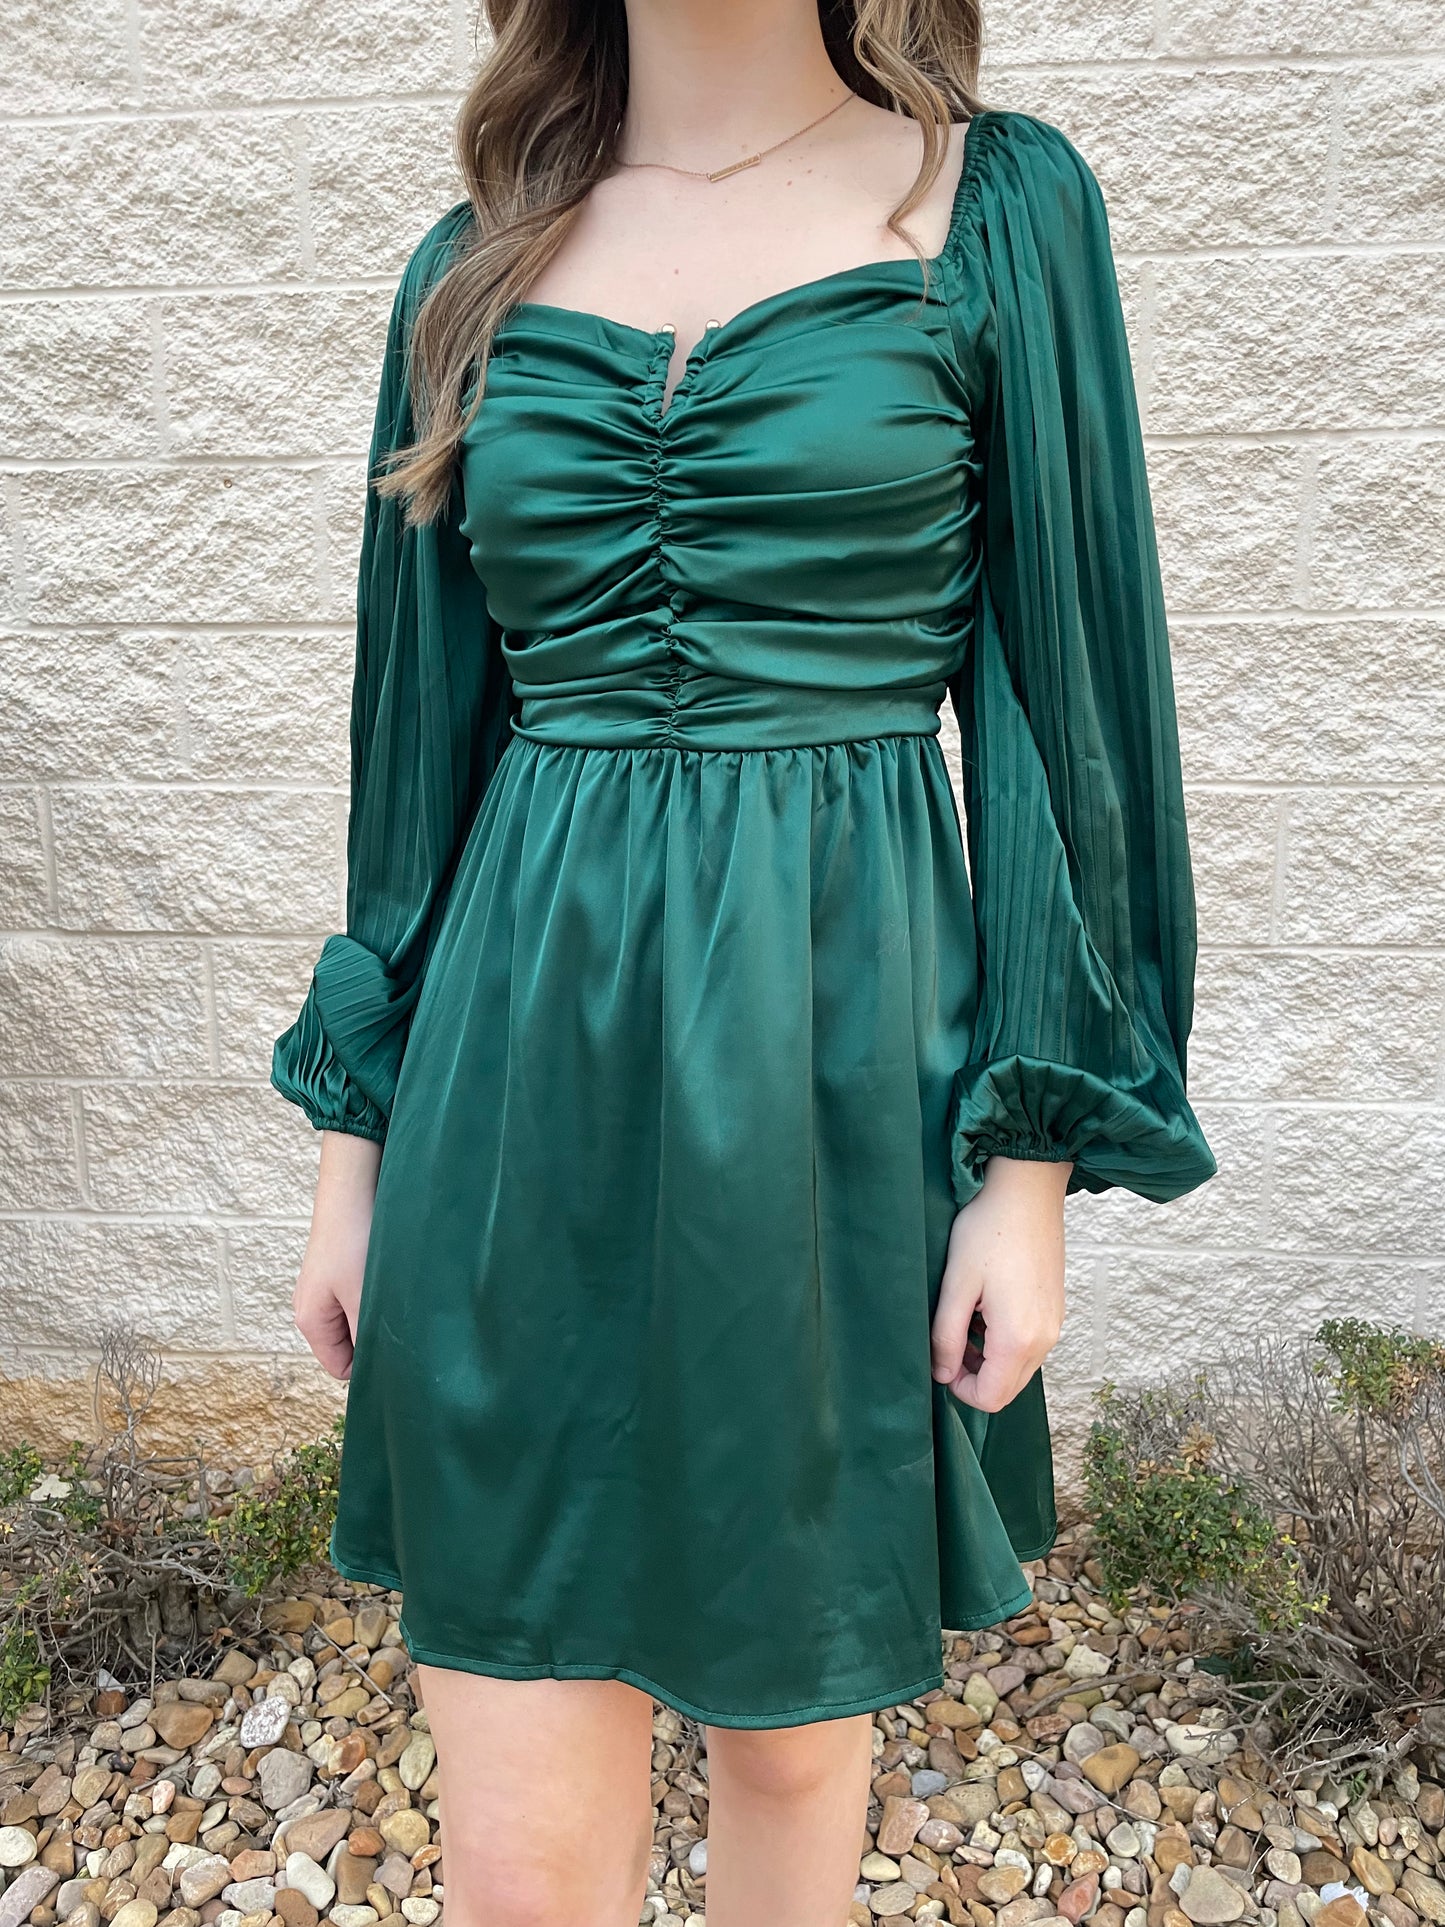 Deeper Love Green Satin Dress